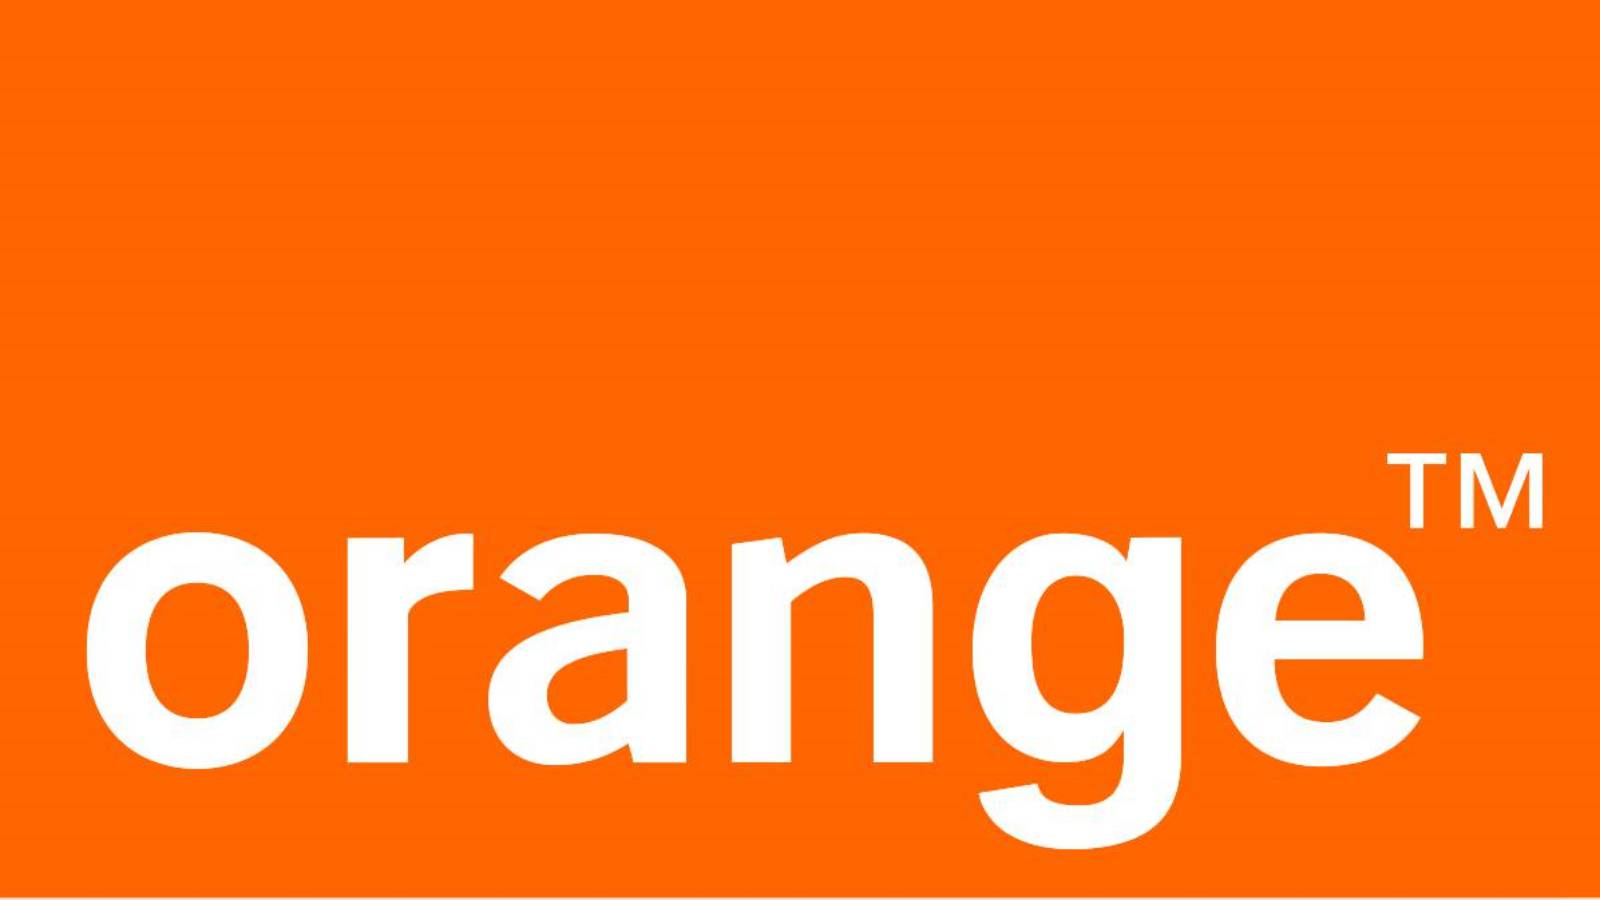 Immatricolazione arancione